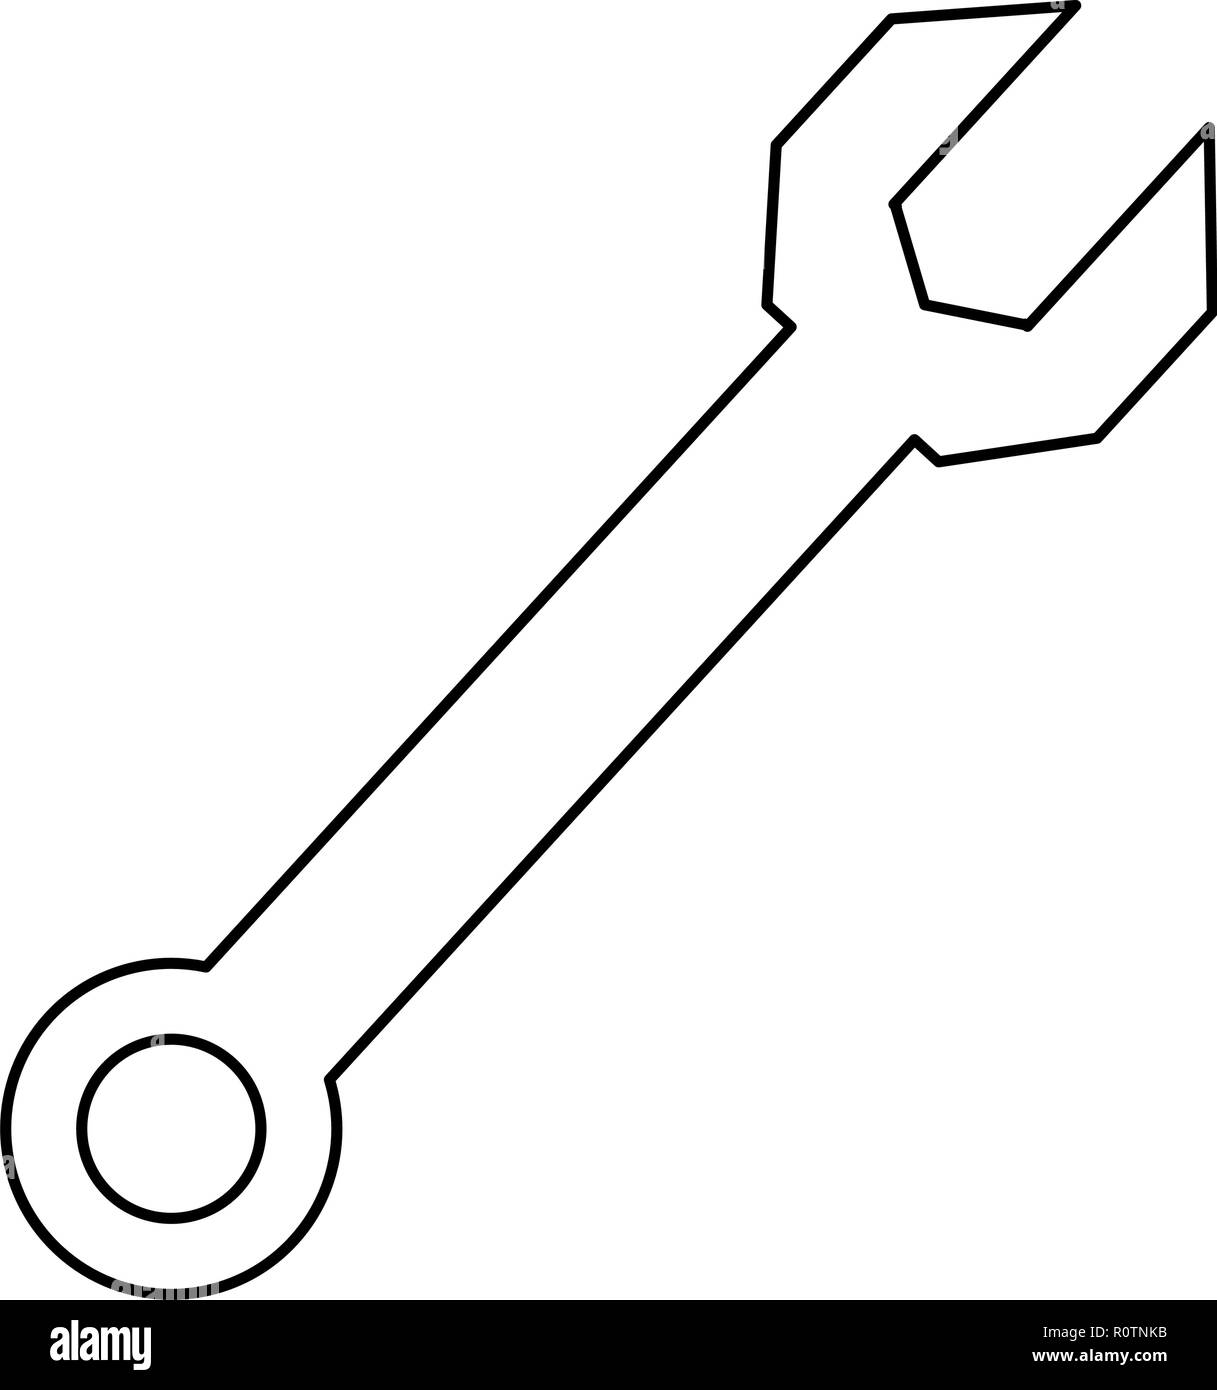 Schraubenschlüssel auf weißem Hintergrund Vector Illustration Vektor illustration Stock Vektor